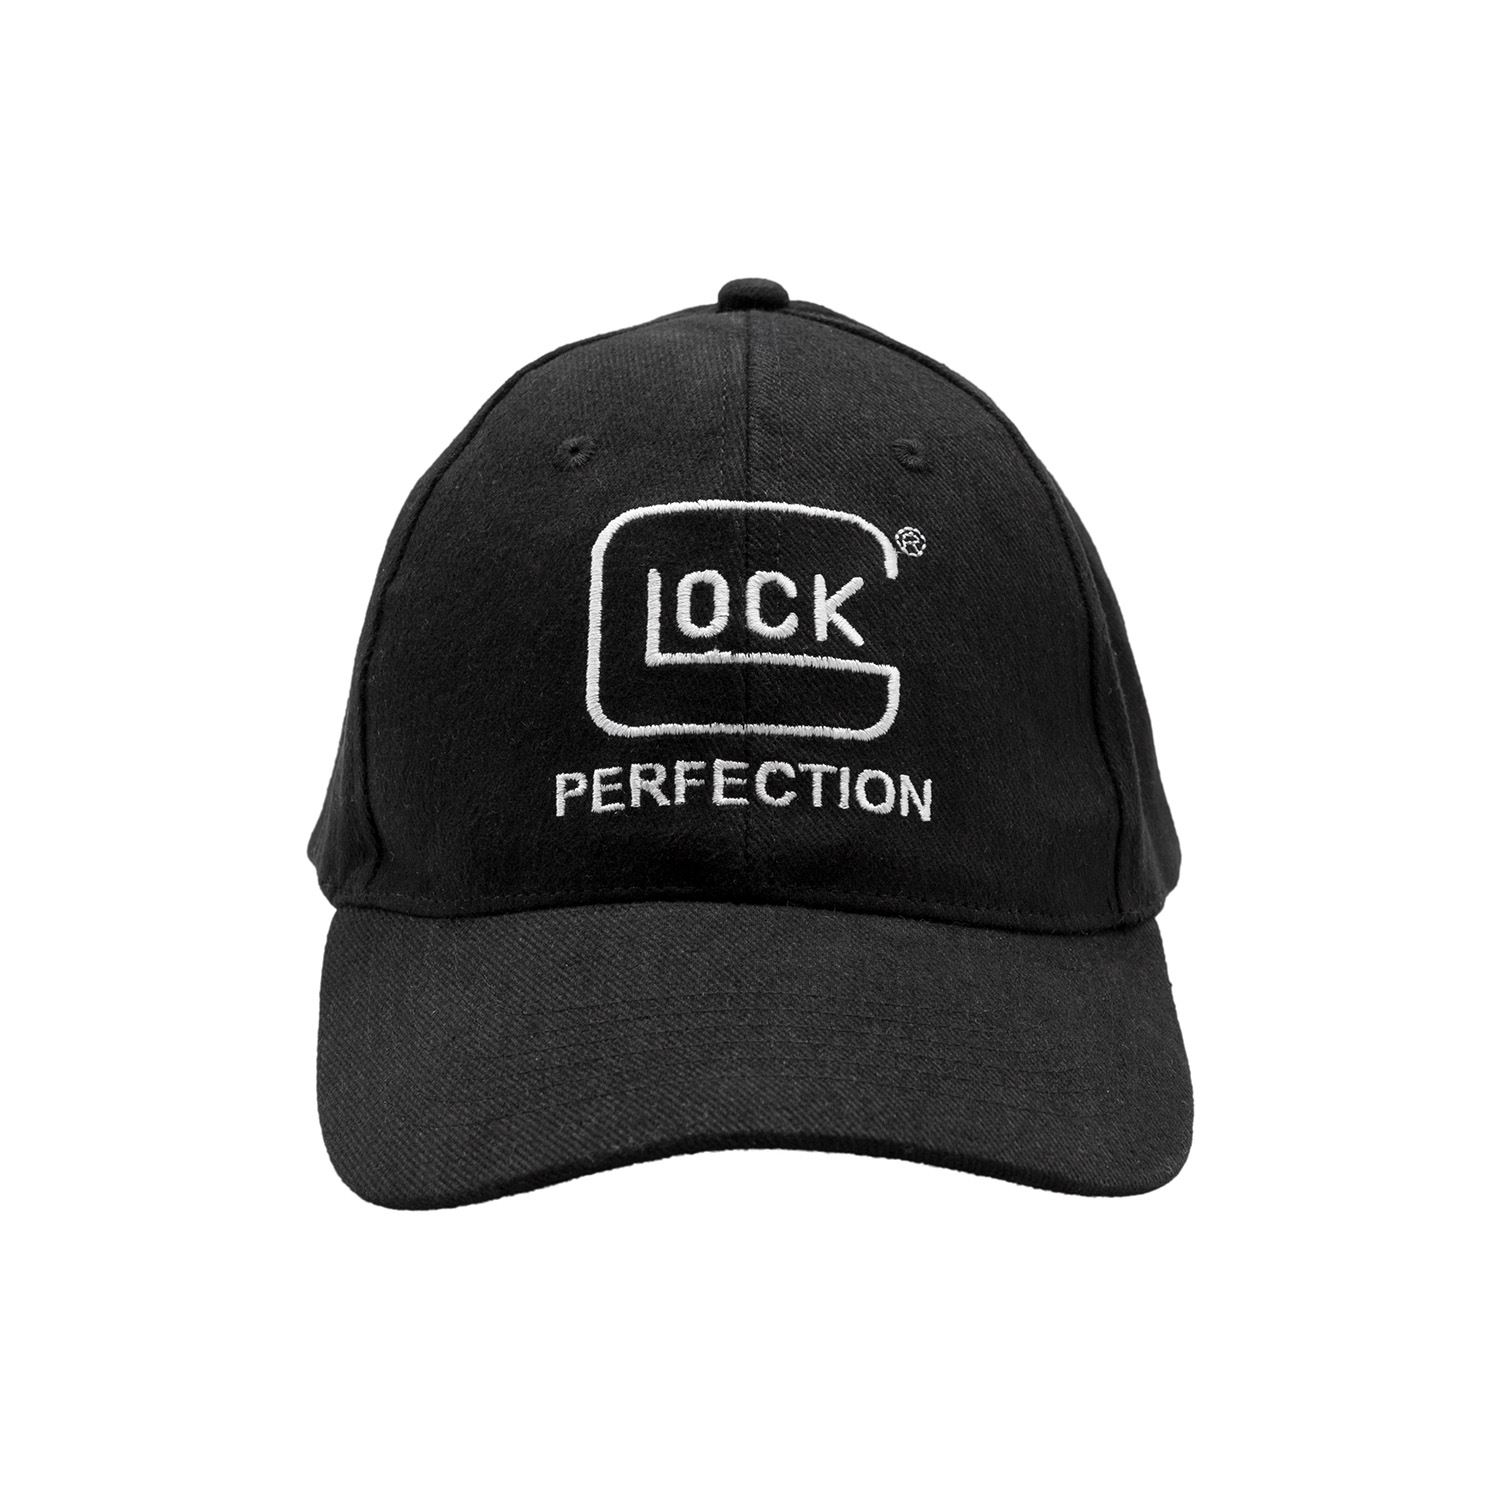 GLOCK Cap in black 3038